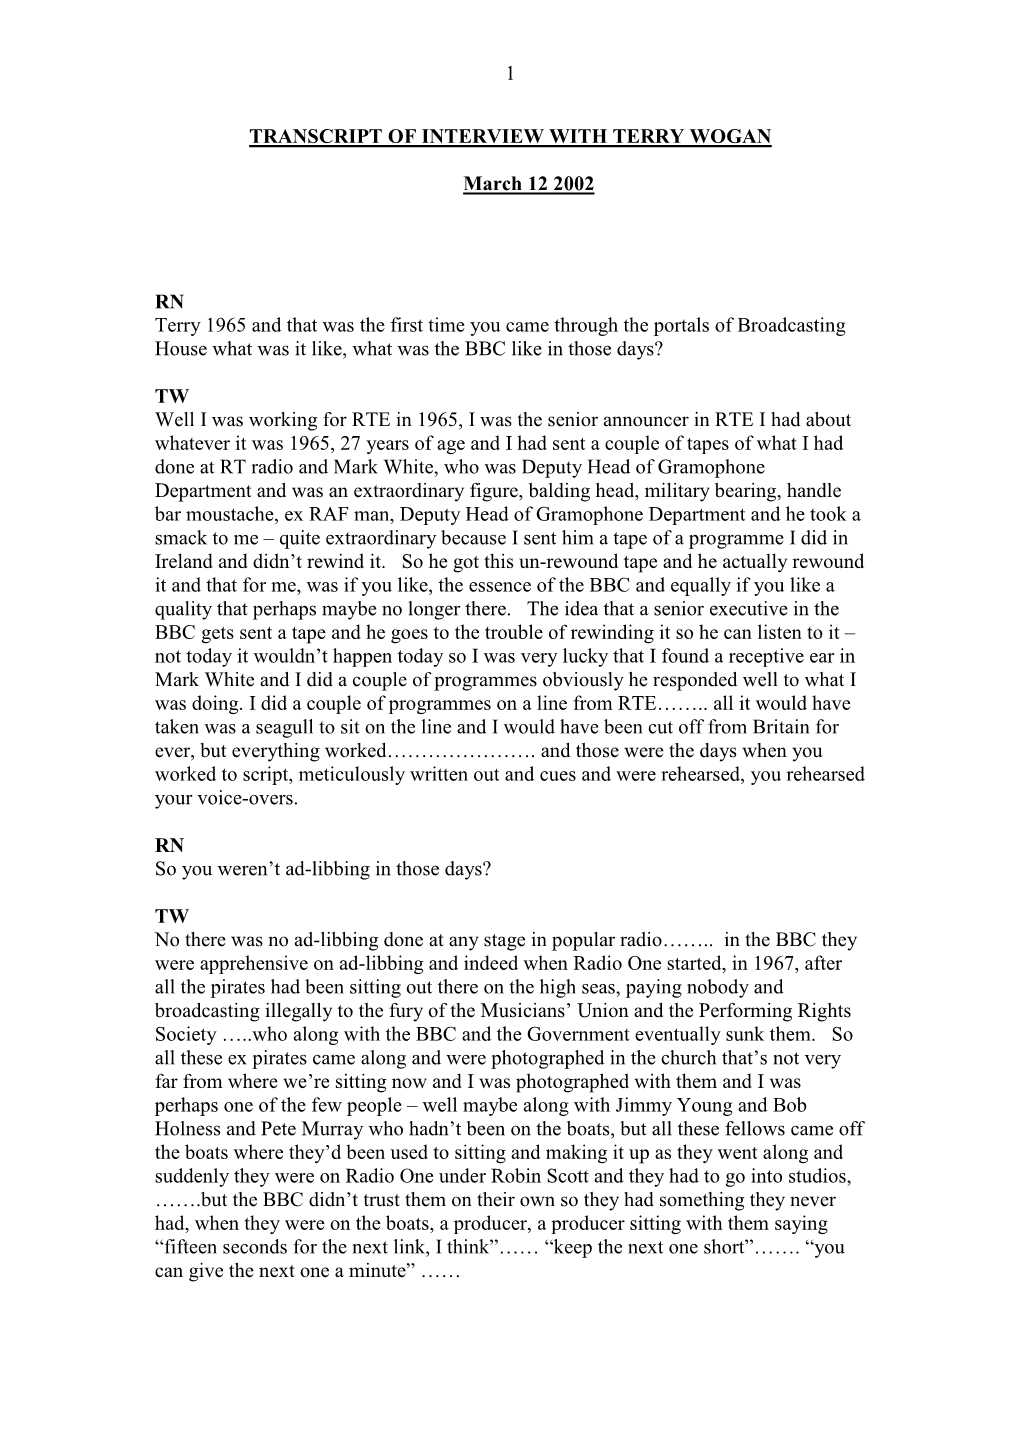 Terry Wogan Interview Transcript